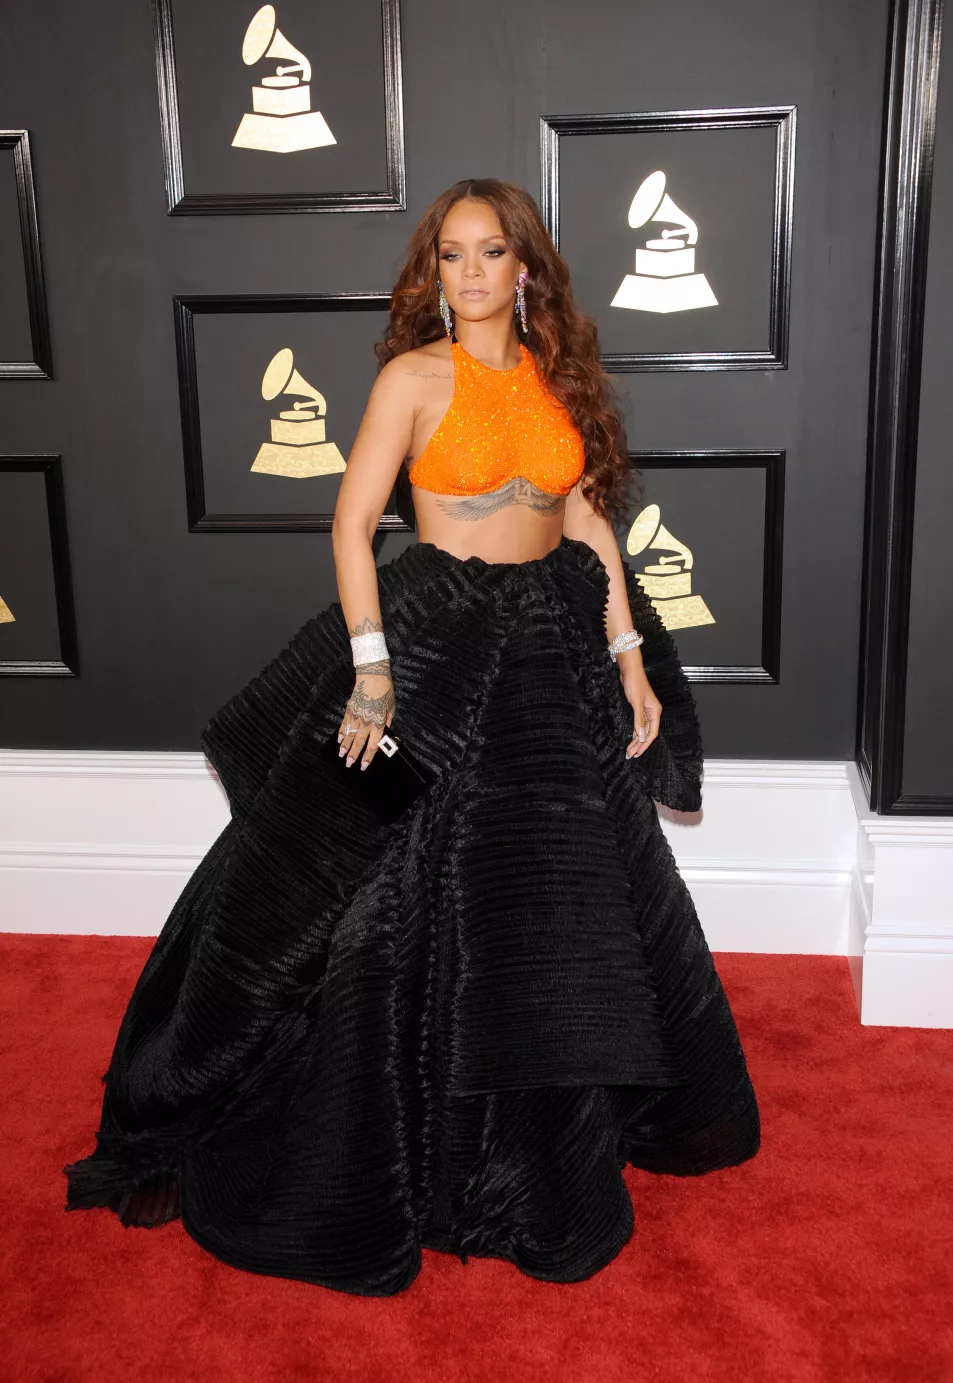 Rihanna at the Grammys 2017